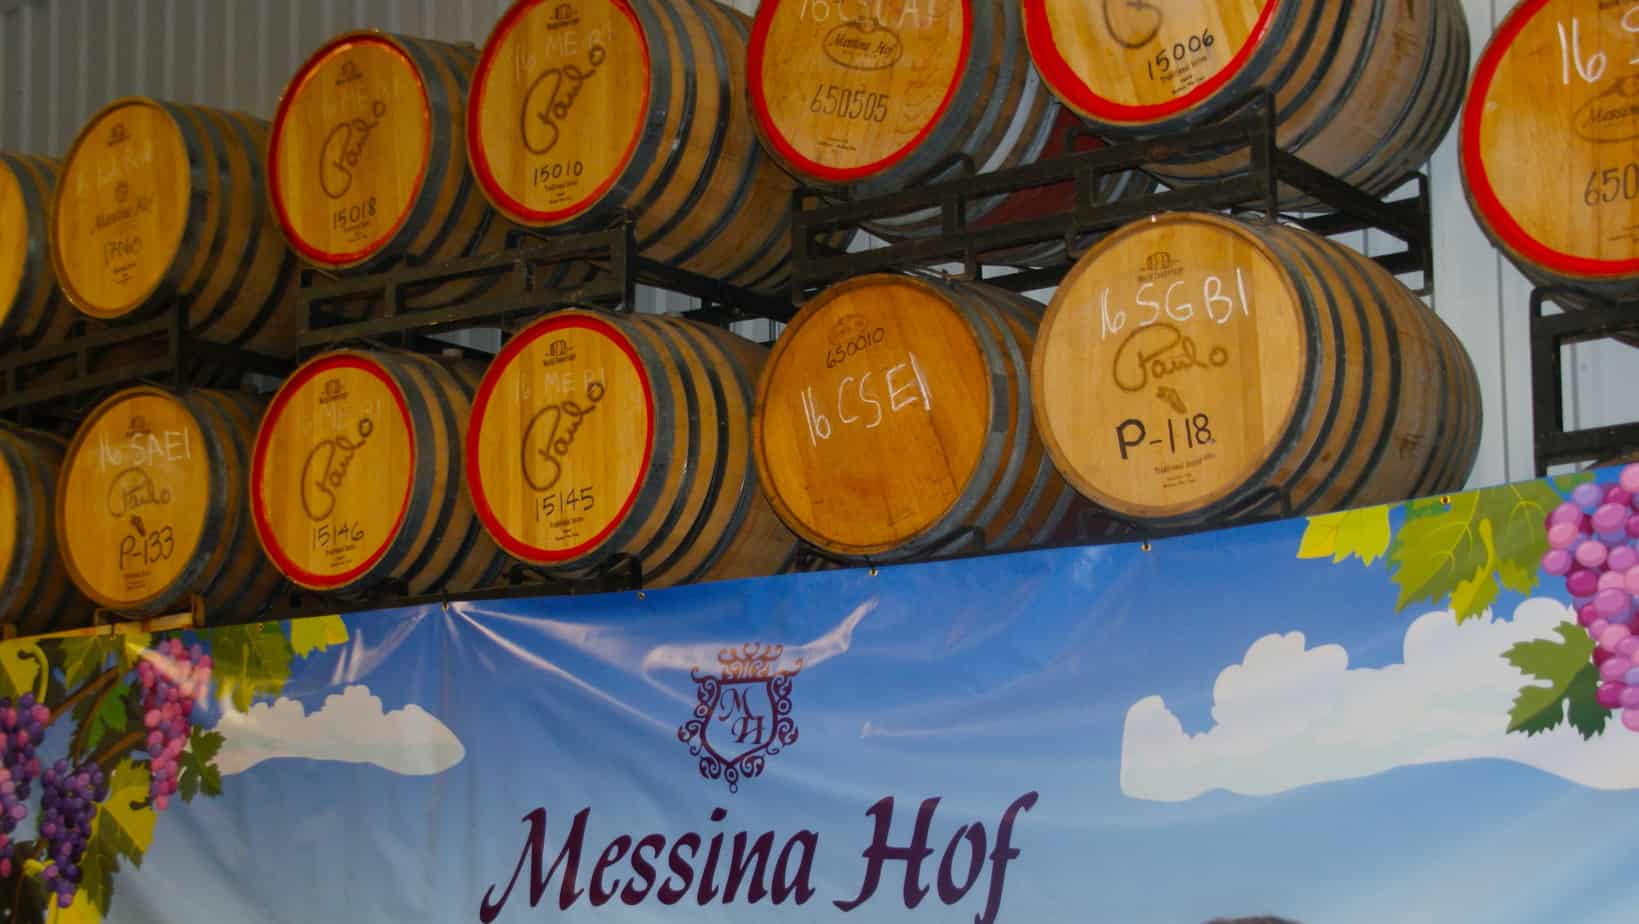 Messina Hof barrels